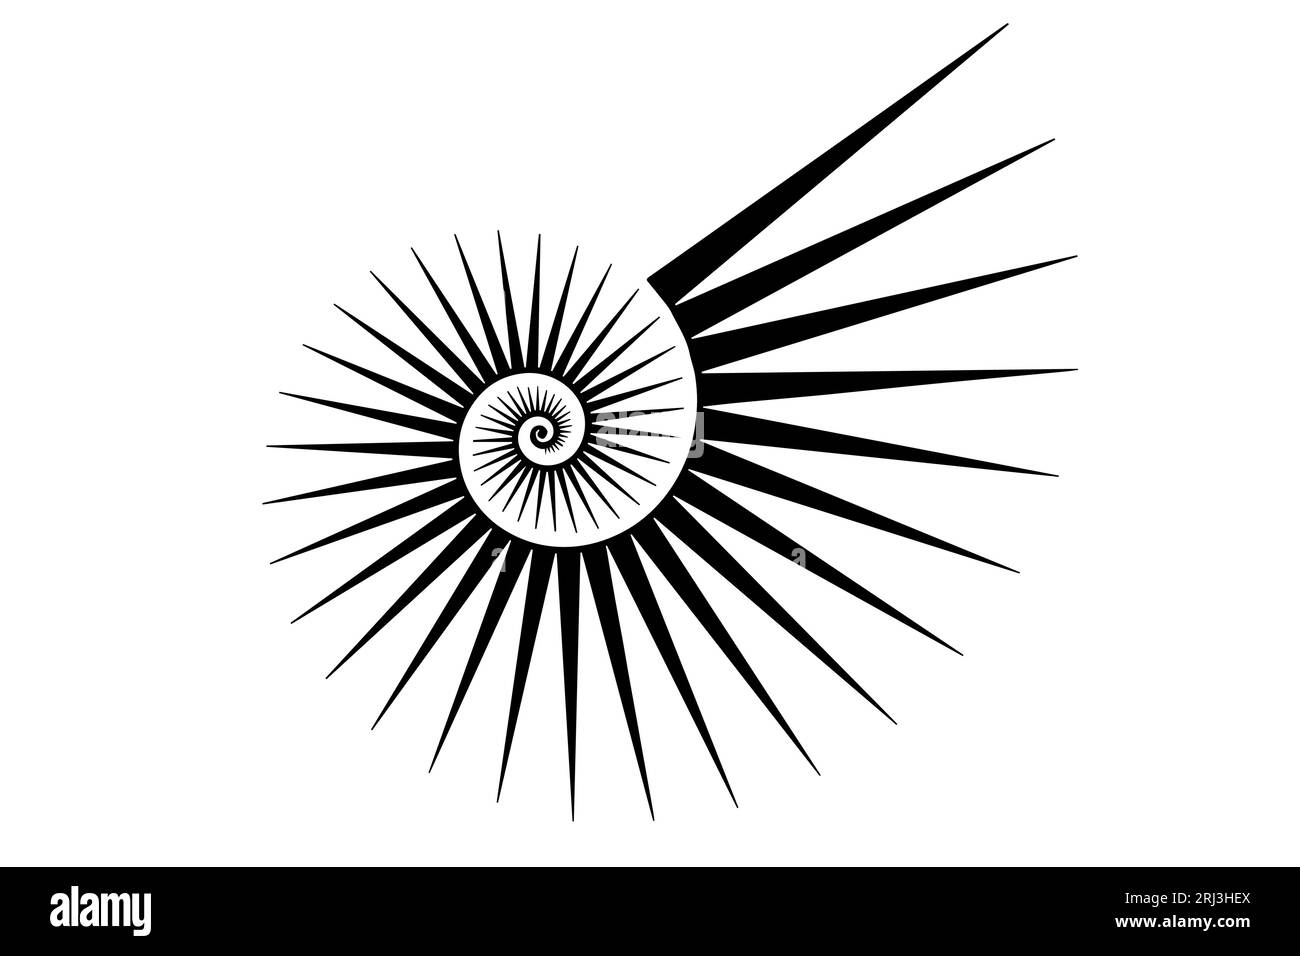 Fibonacci Golden ratio. Forme geometriche a spirale. Spirale di lumaca. Conchiglia marina di triangoli neri. Modello di logo sacro. Vettore isolato su sfondo bianco Illustrazione Vettoriale